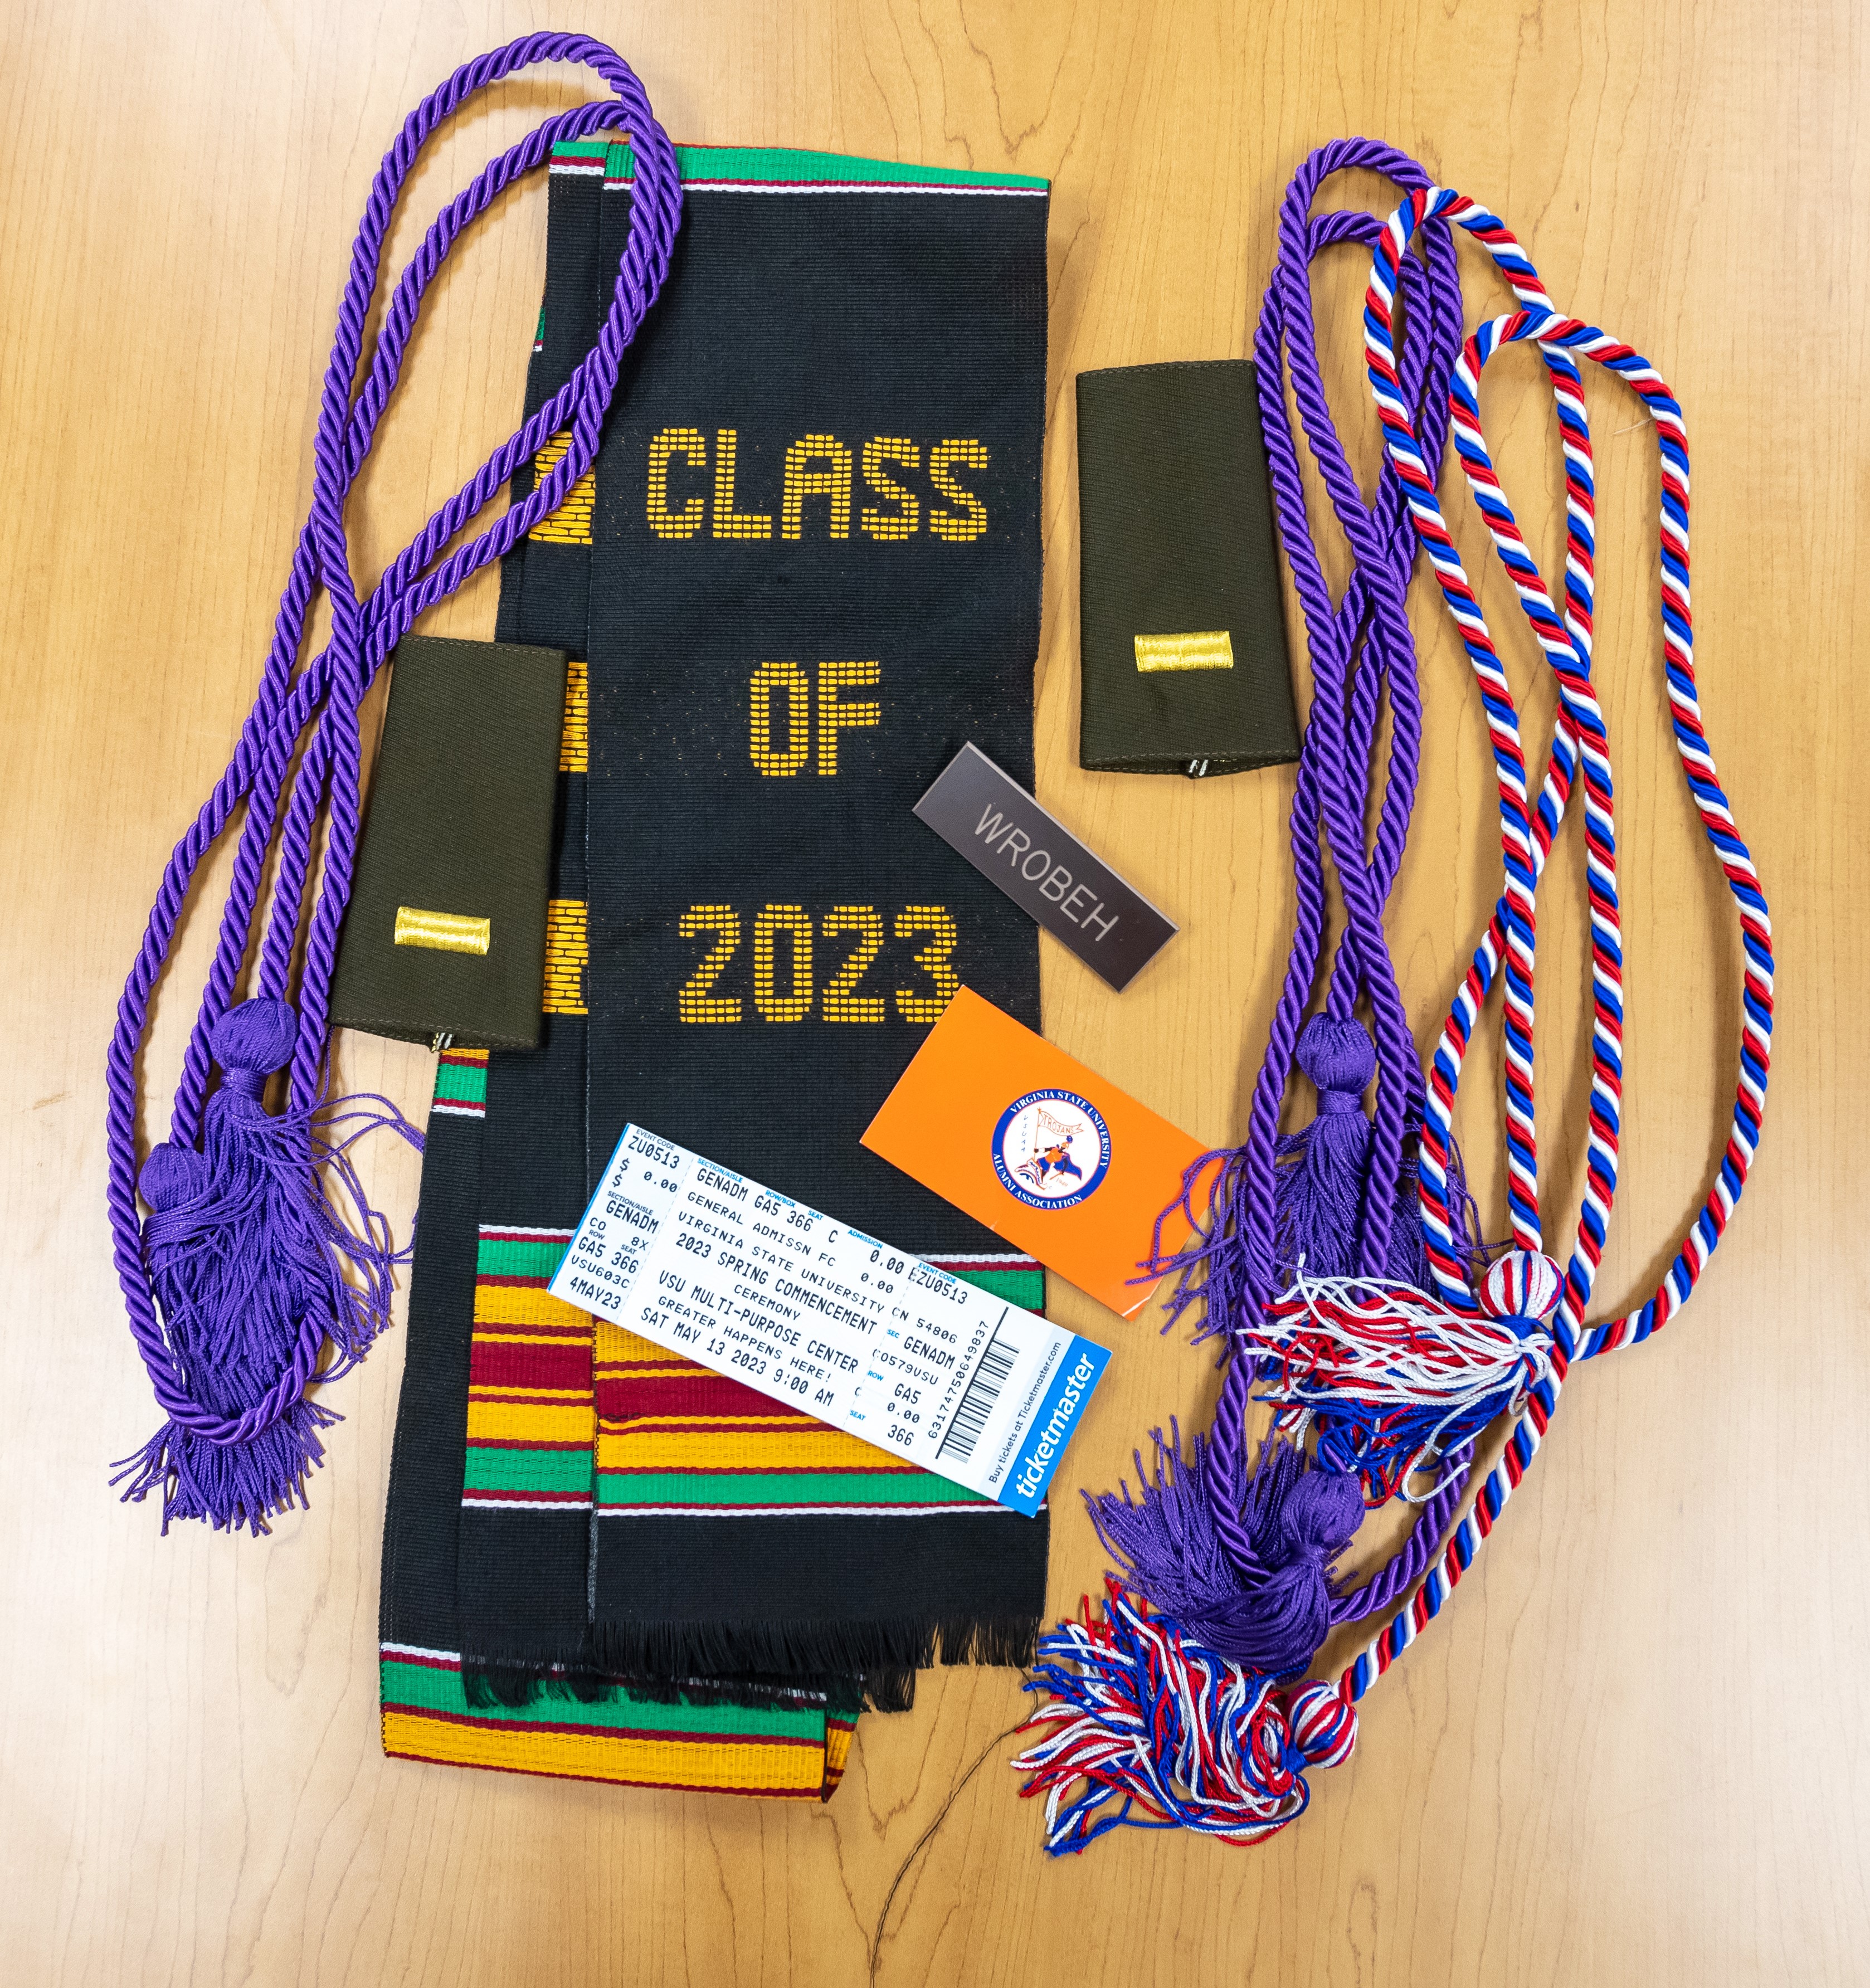 James' graduation sash and cords